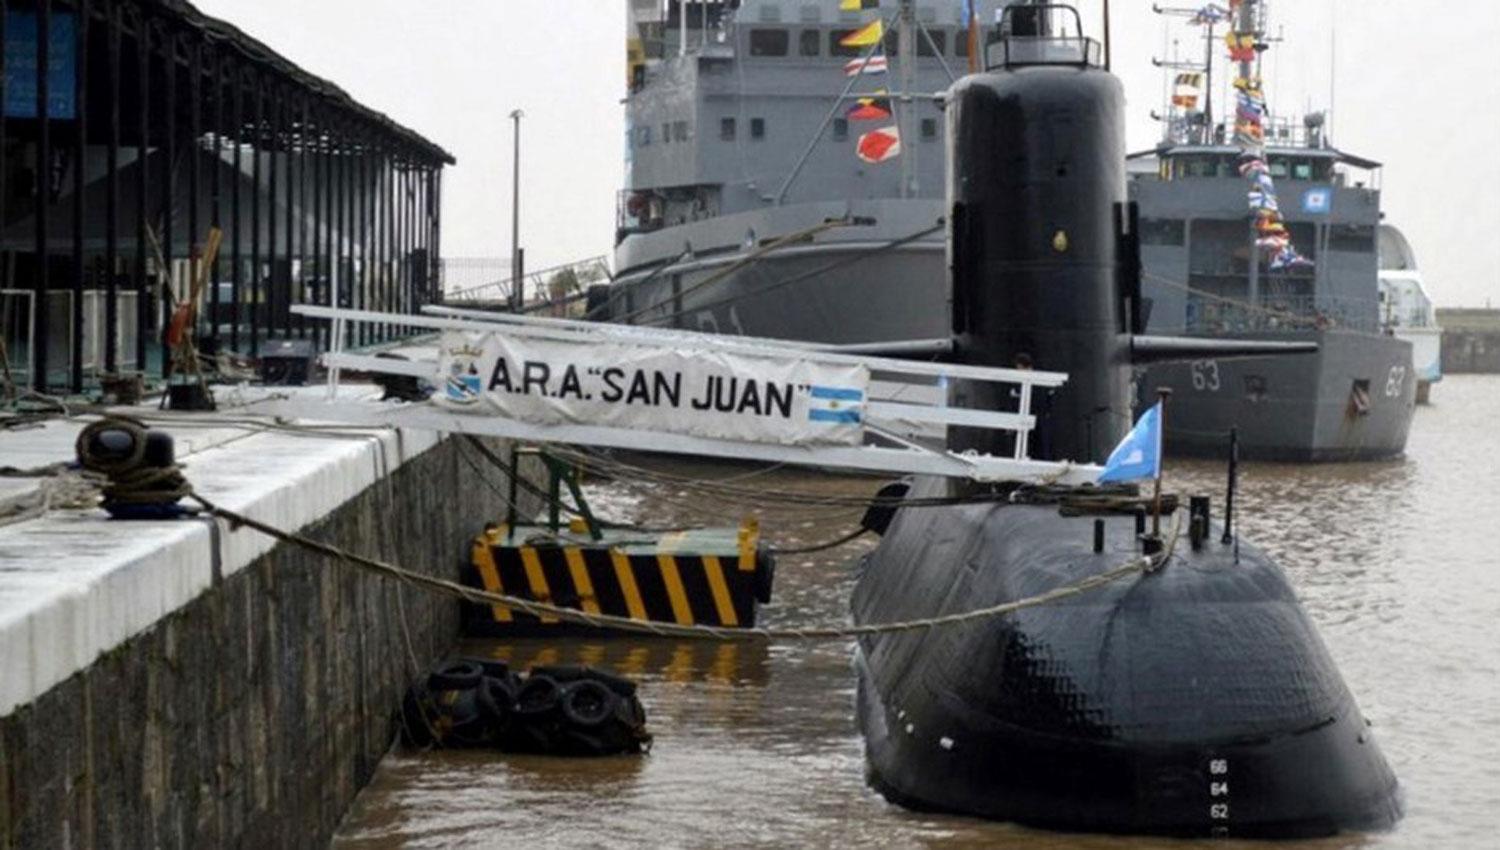 EN EL PUERTO. El ARA San Juan, en la base naval de Mar del Plata junto a otros barcos de guerra. FOTO TOMADA DE CLARIN